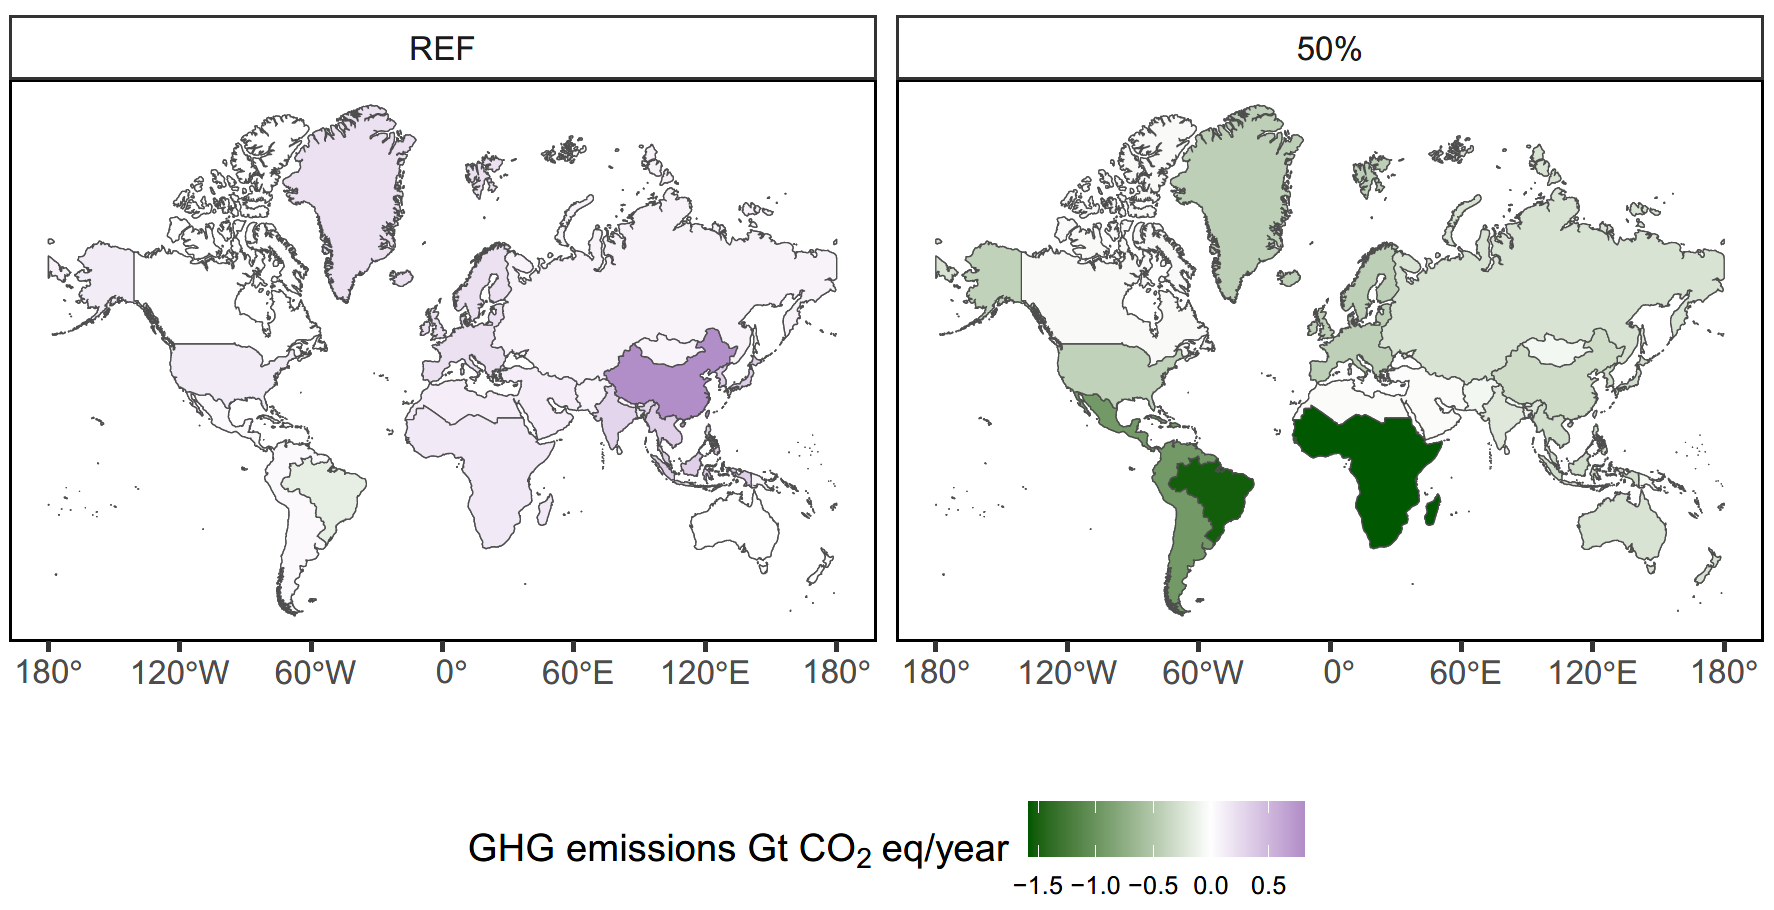 Üvegházhatású gézok kibocsátásának regionális változása a referencia (balra) és az 50 százalékos arányú átállással számoló forgatókönyv (jobbra) esetén